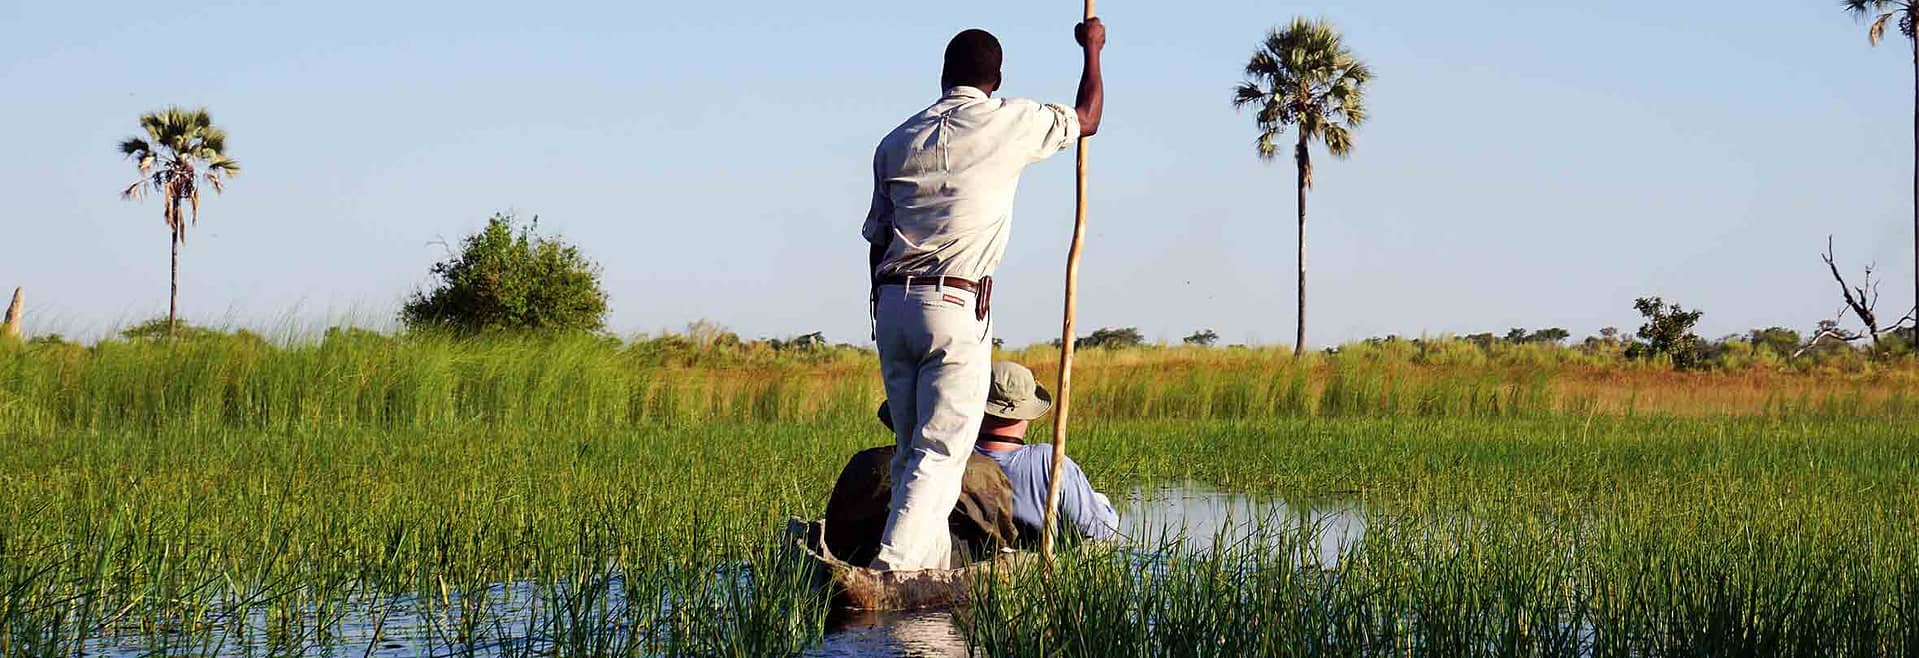 Mokoro-Fahrt im Okawango-Delta, Botswana